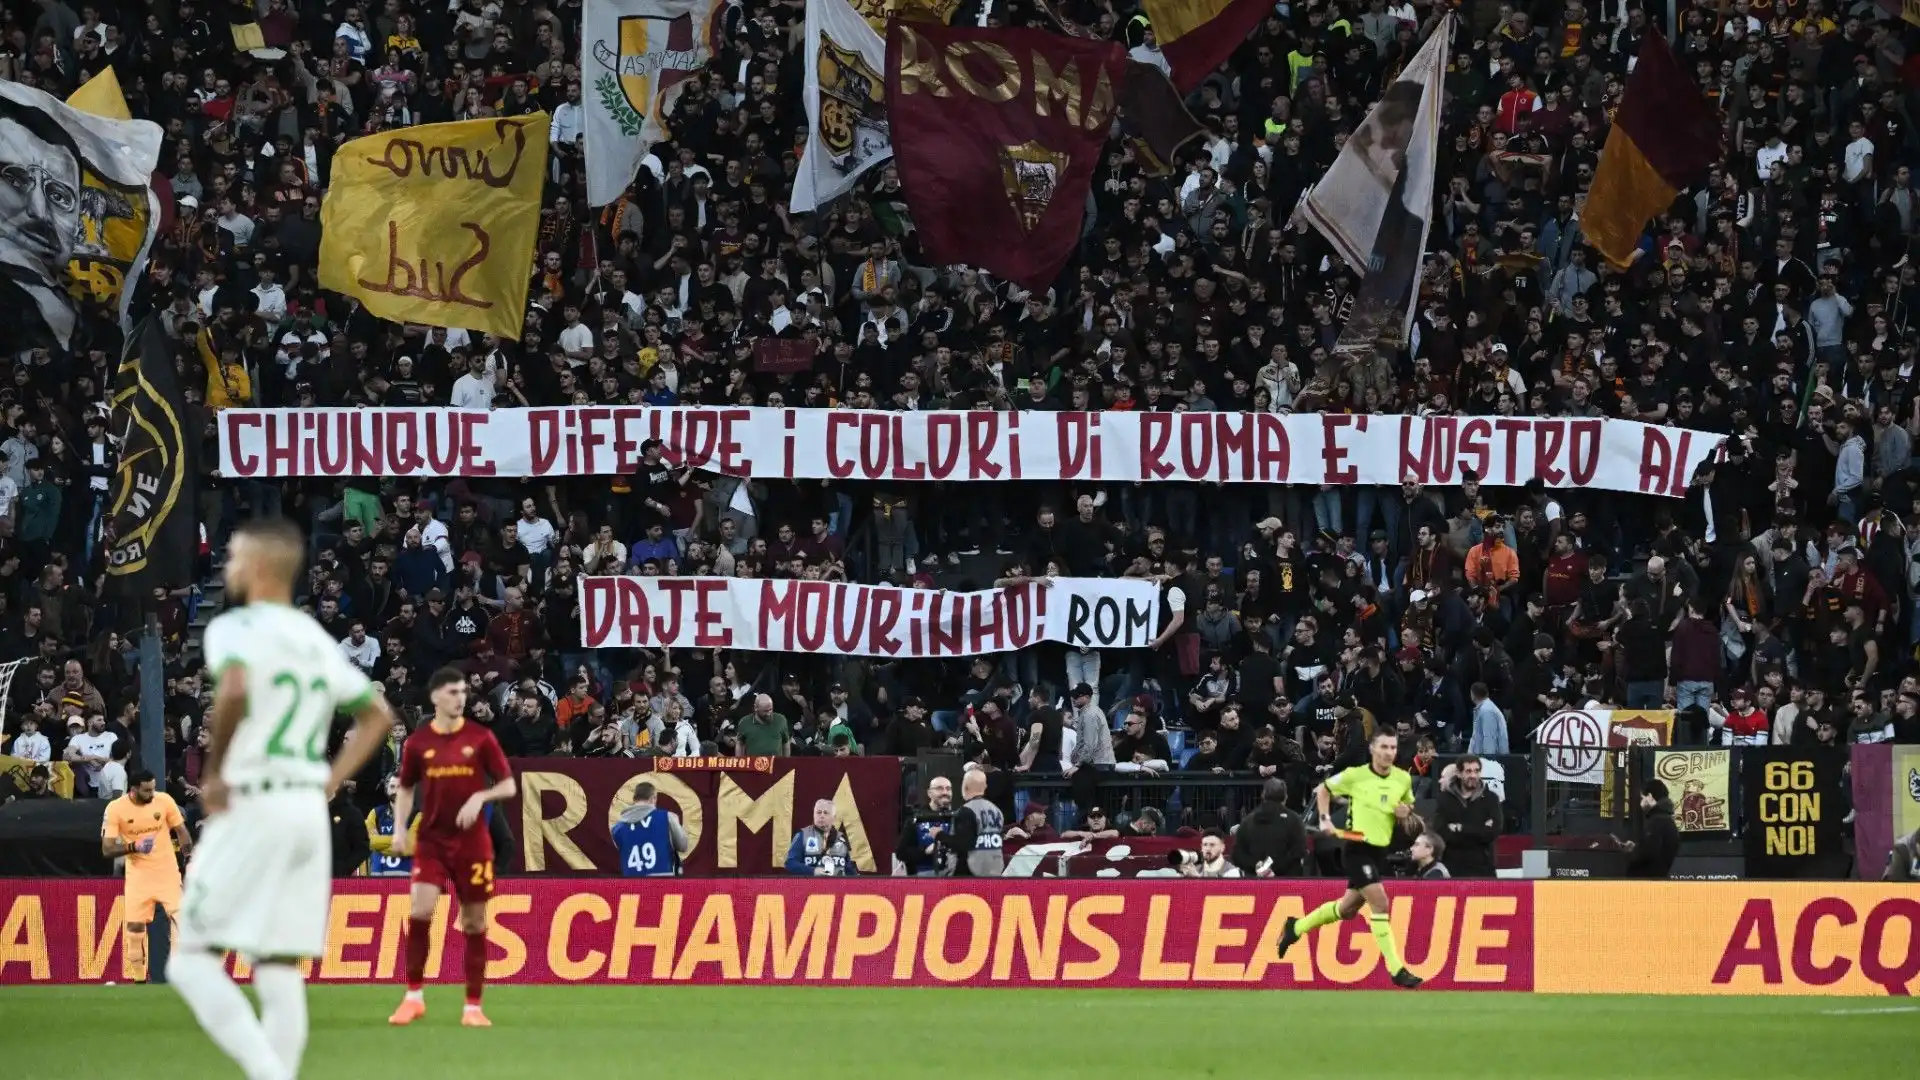 La contestazione dei tifosi della Roma: "Chiunque difende i colori della Roma è nostro alleato. Forza Mourinho!"